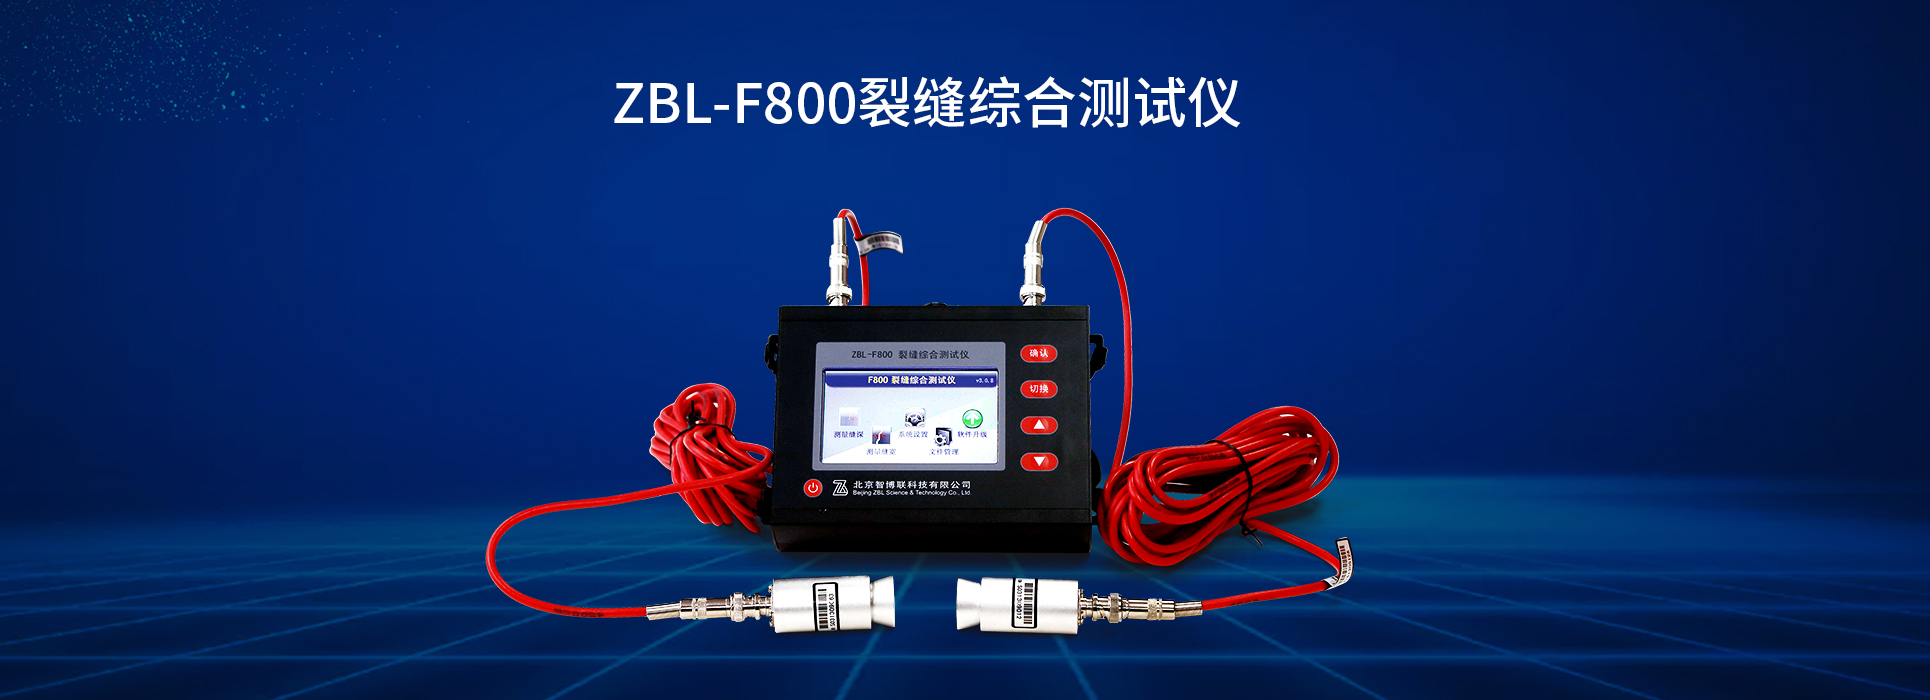 ZBL-F800裂缝综合测试仪